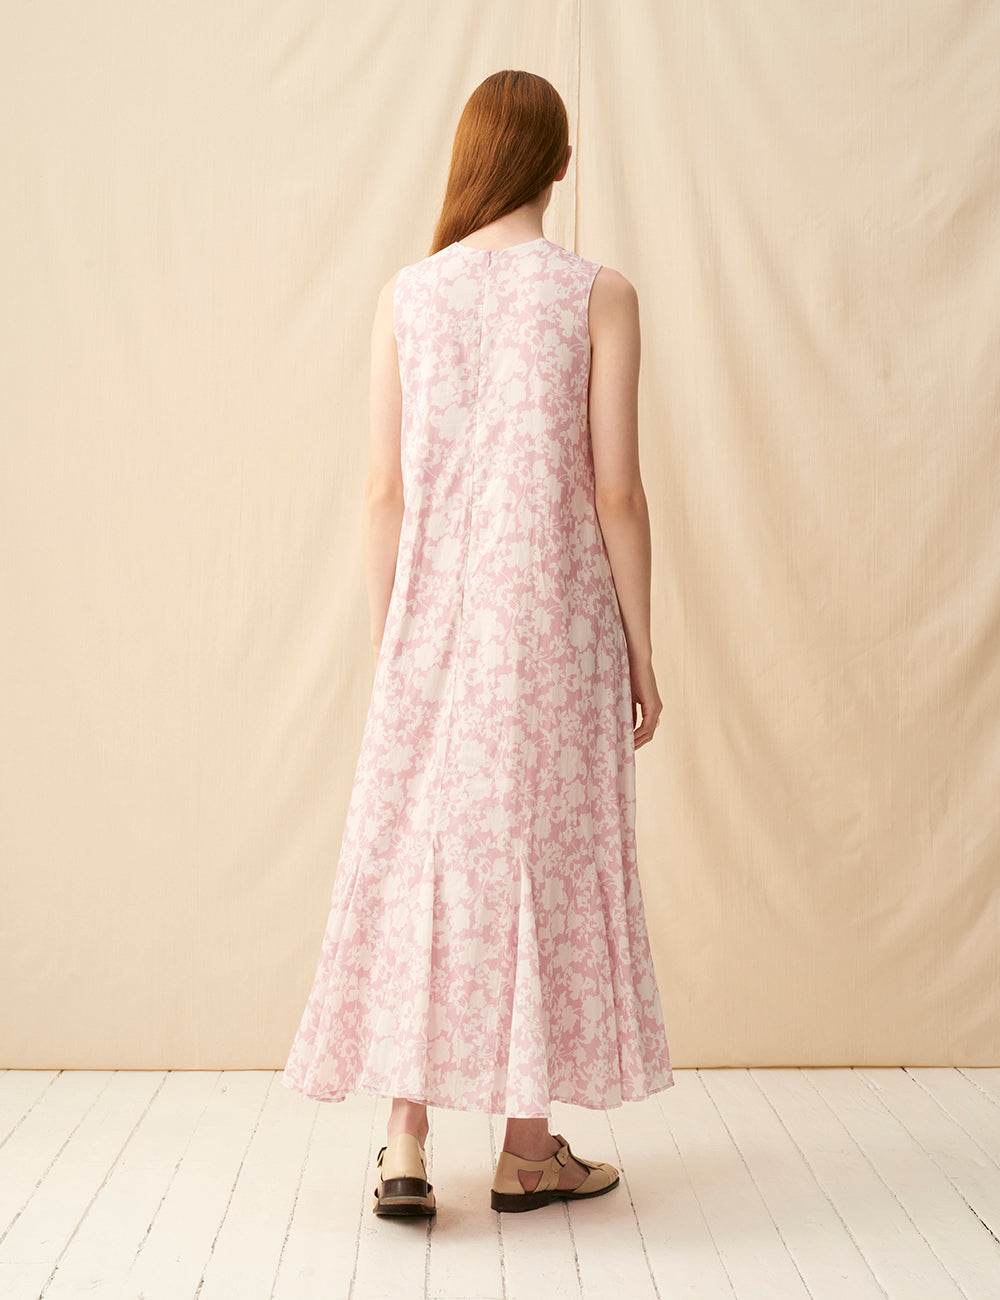 夏の月影のドレス <br>Garden Shadows/Pink